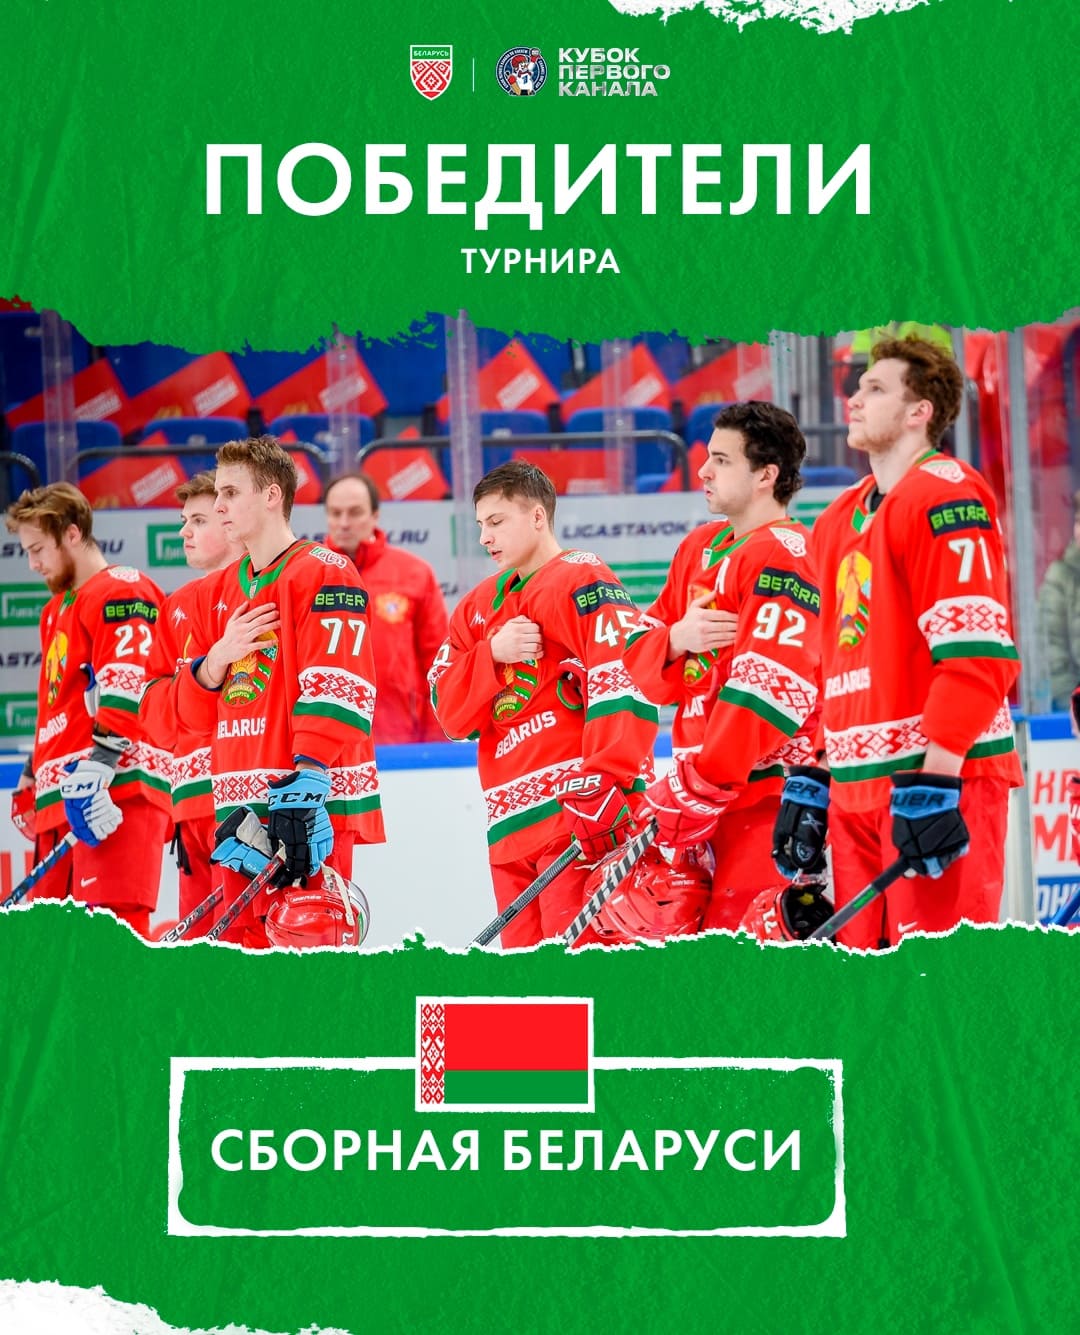 Хоккейная сборная Беларуси выиграла Кубок Первого канала, одолев в финале россиян